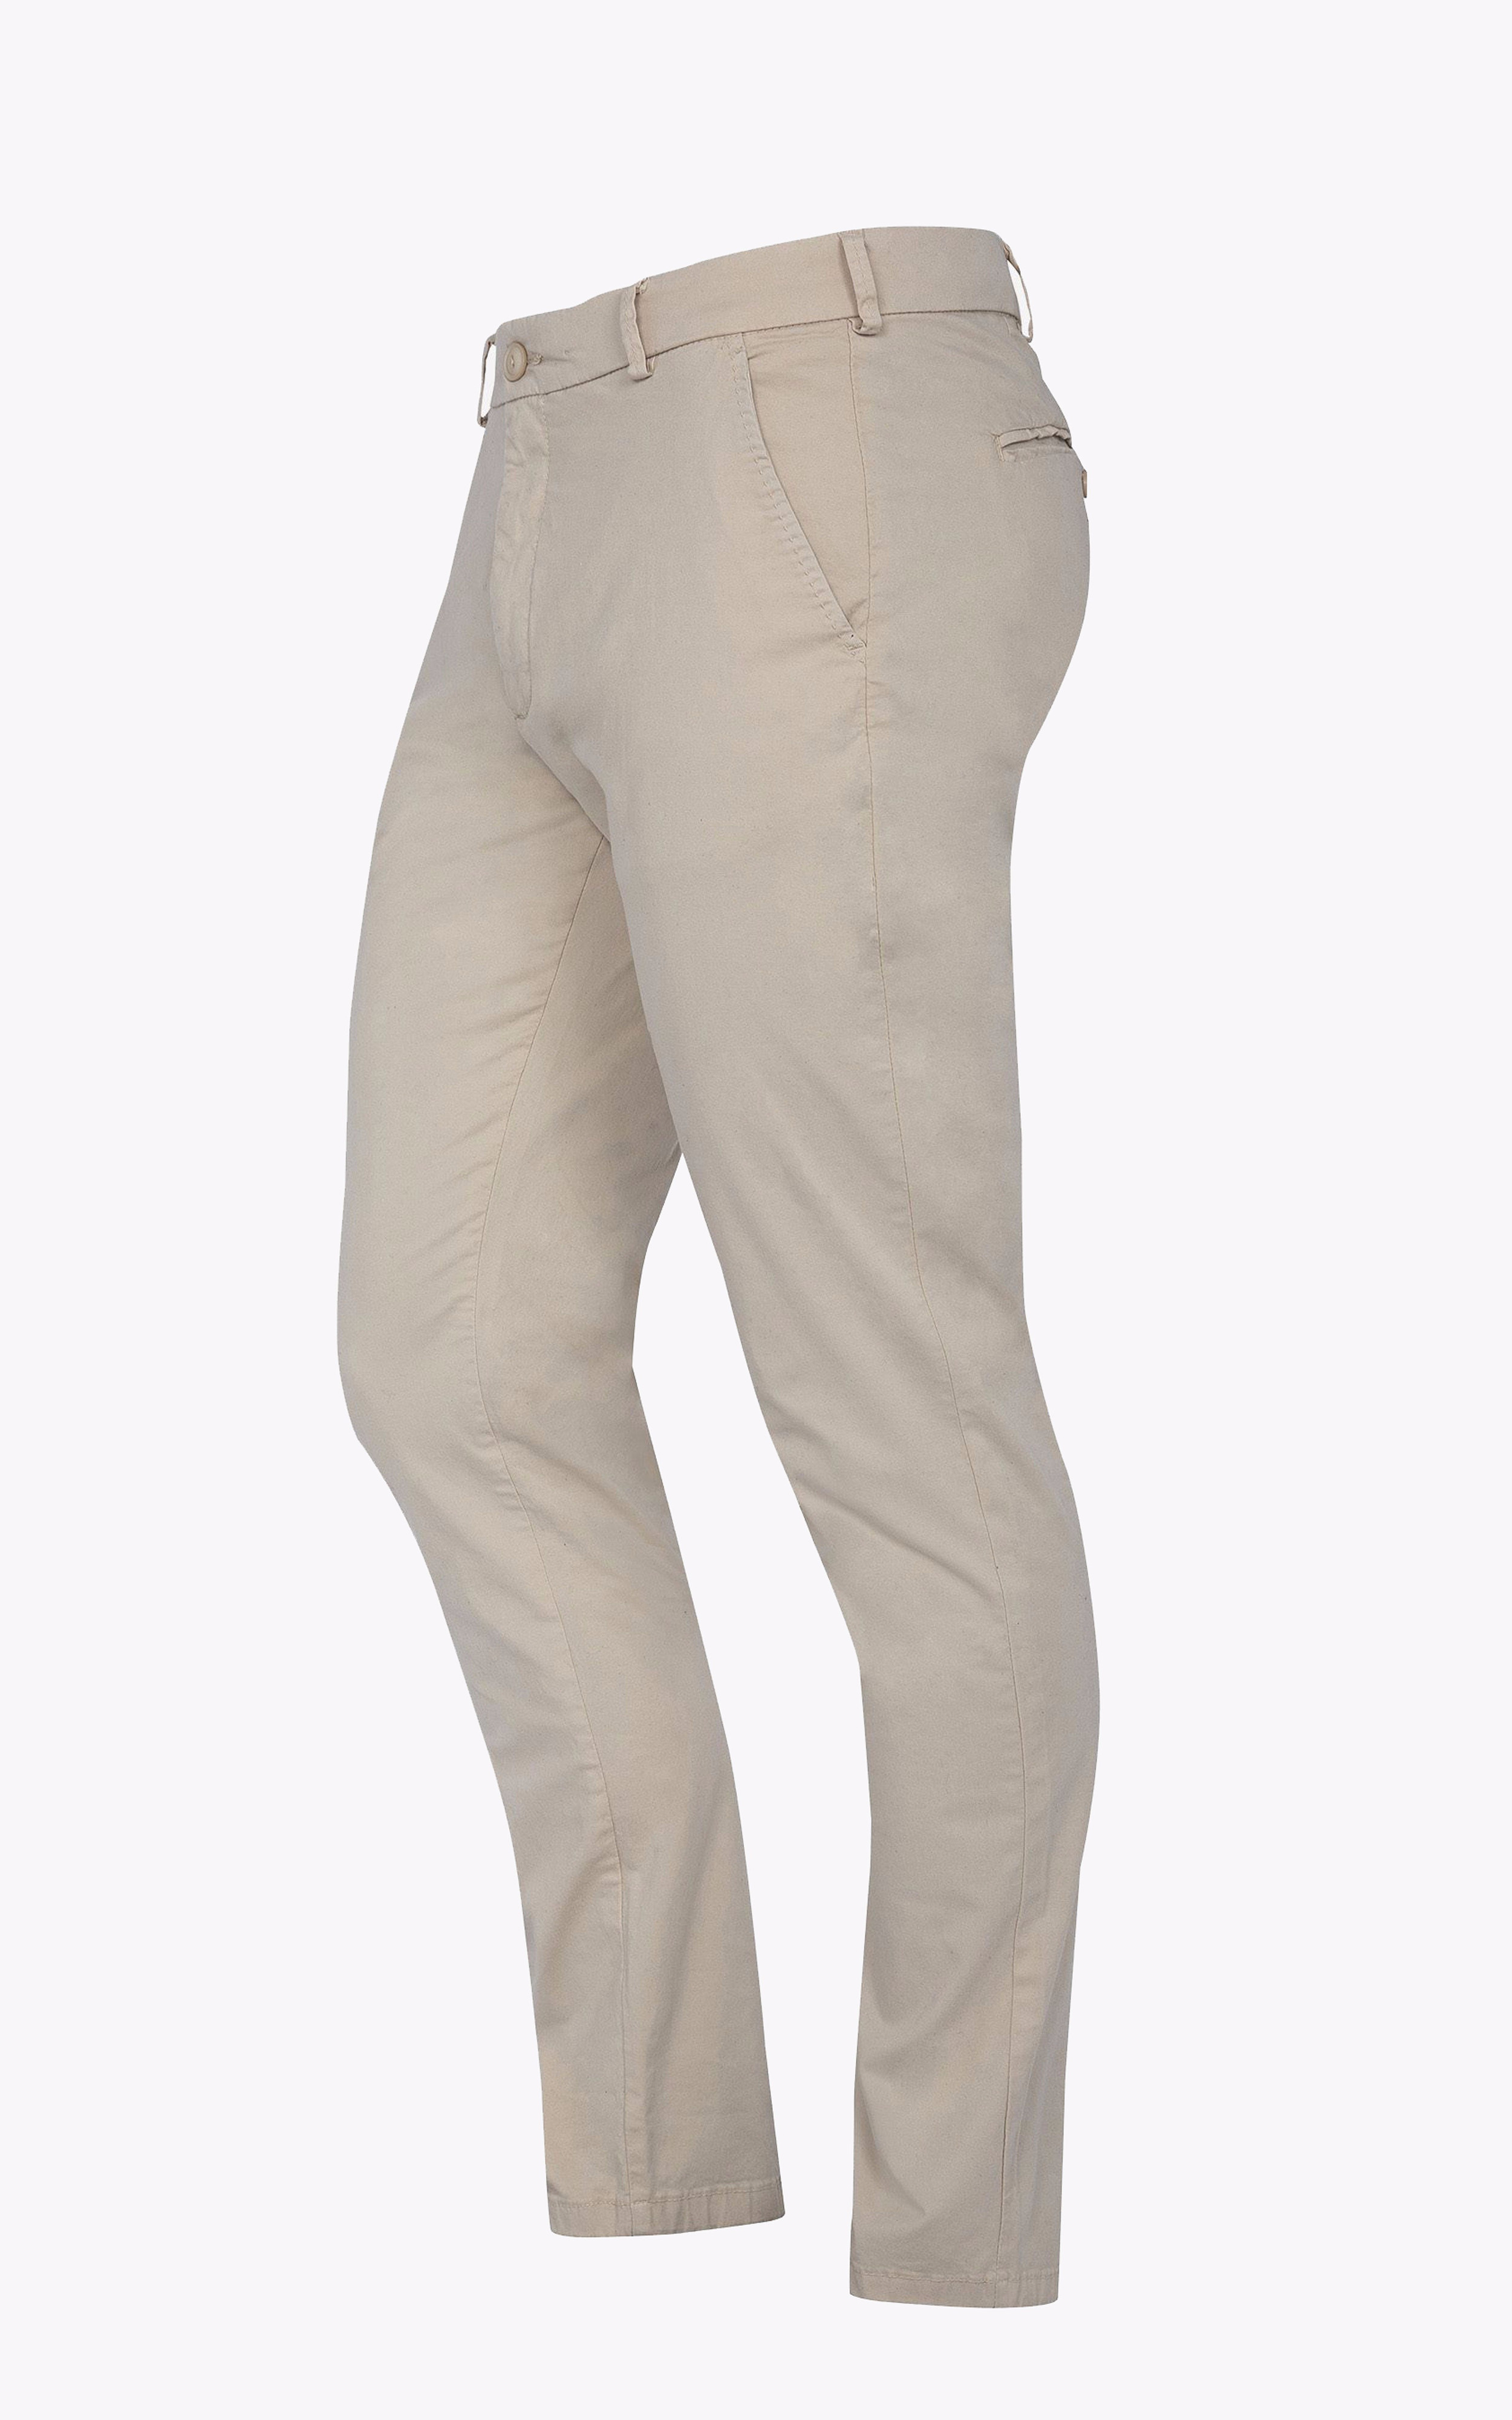 Pantalon chino TRJO70 beige Schott